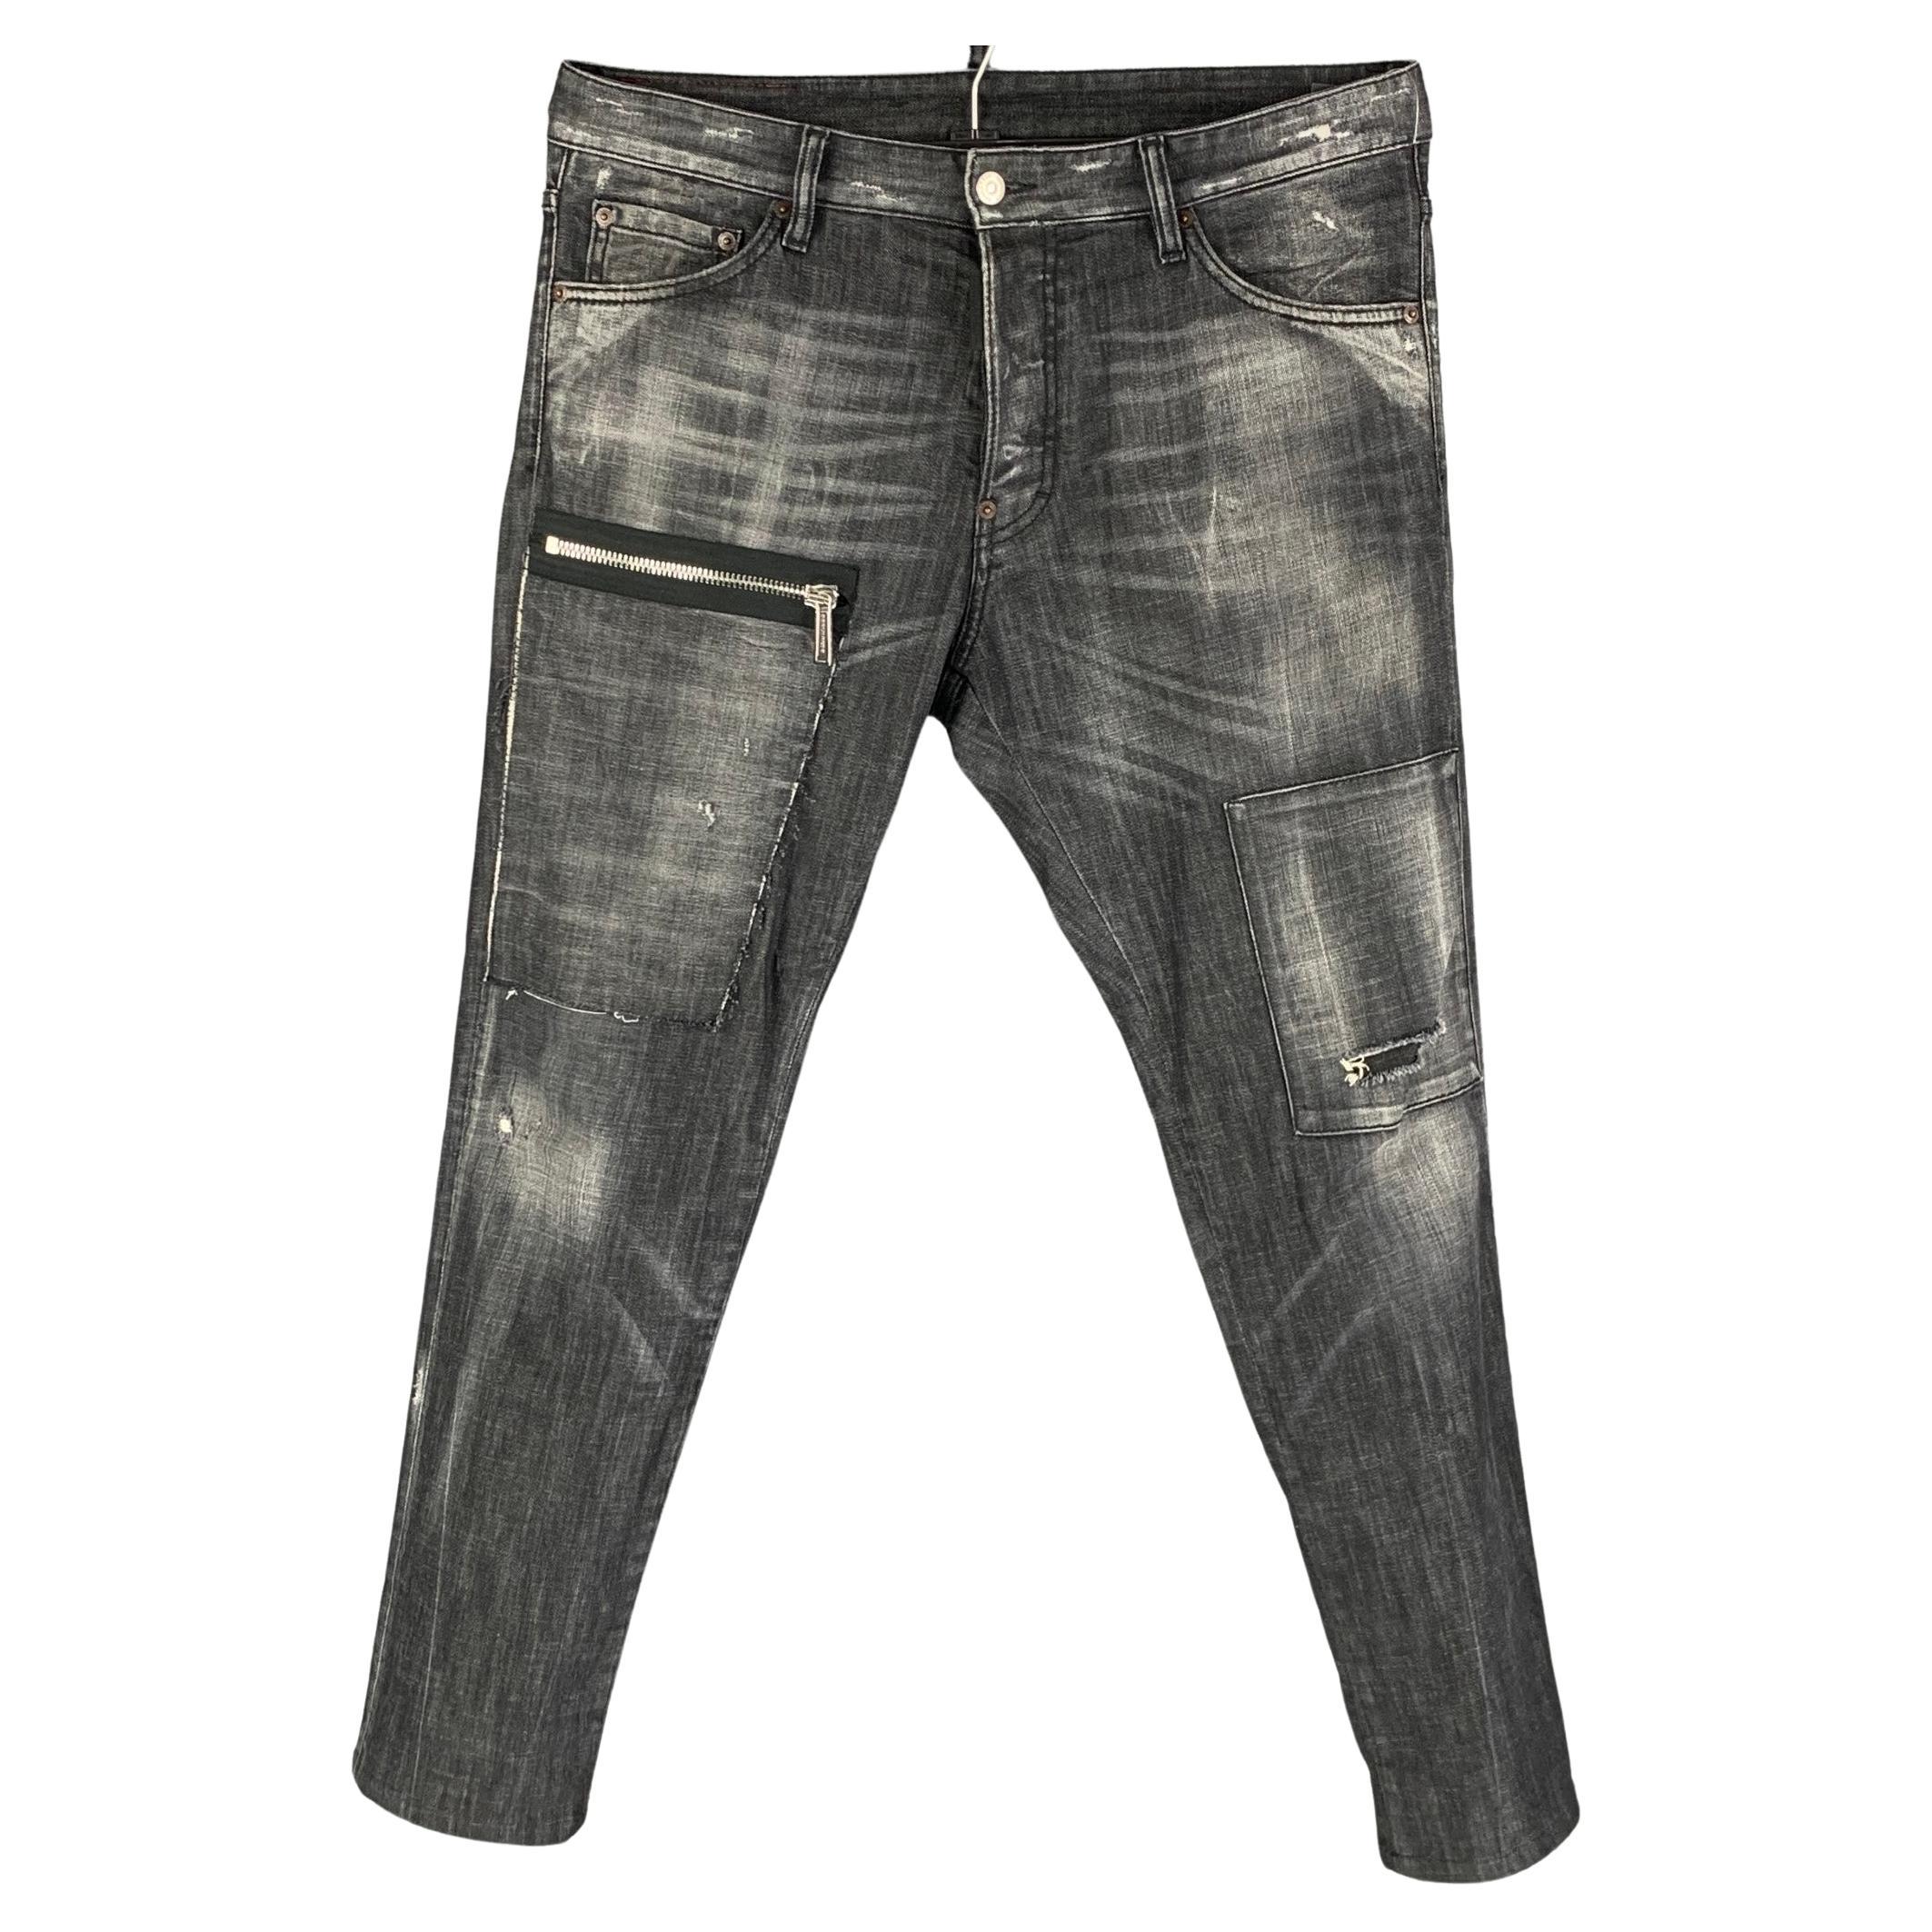 CHANEL Women's Black Wool Cuff Pants Side zip w/pocket Size 40 (6/8) NWOT